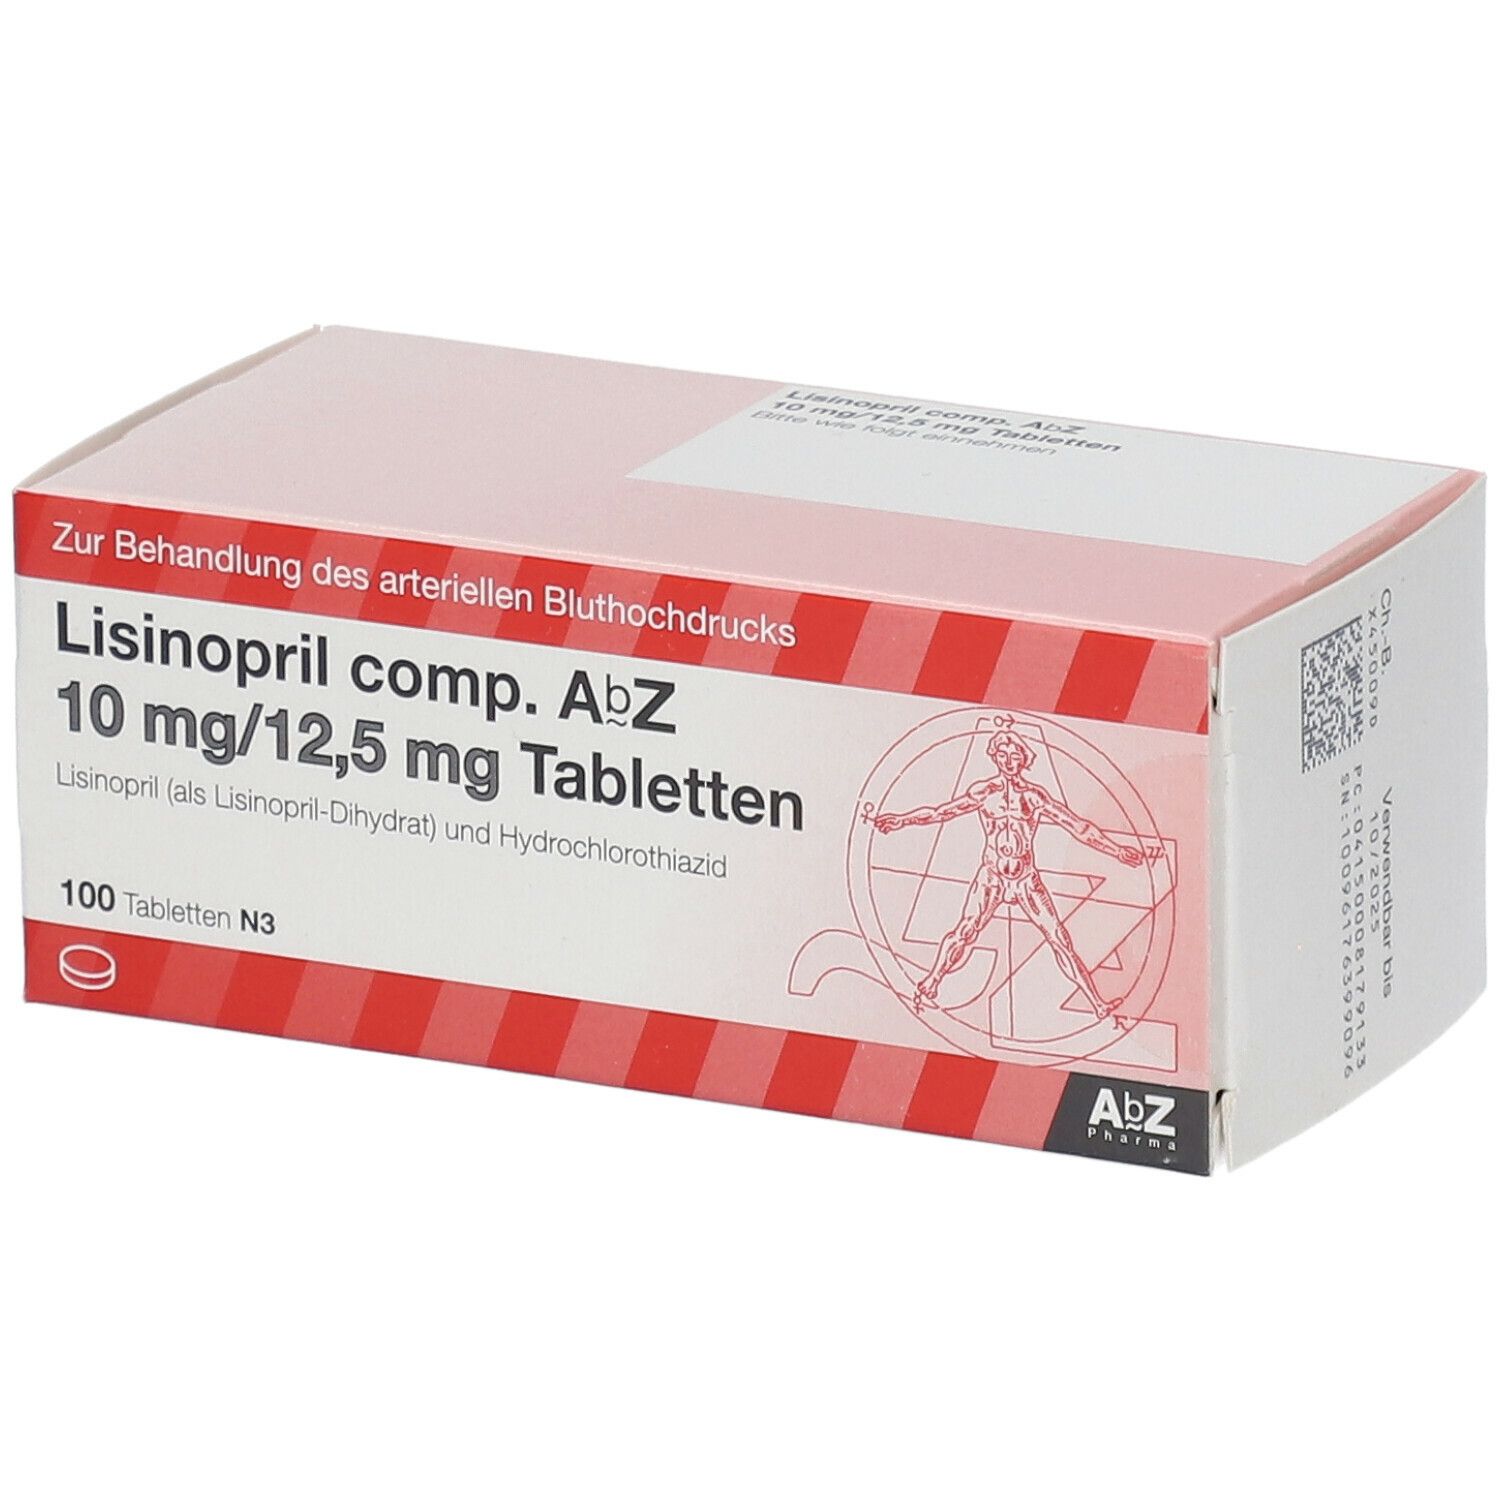 Lisinopril comp. AbZ 10 mg/12,5 mg